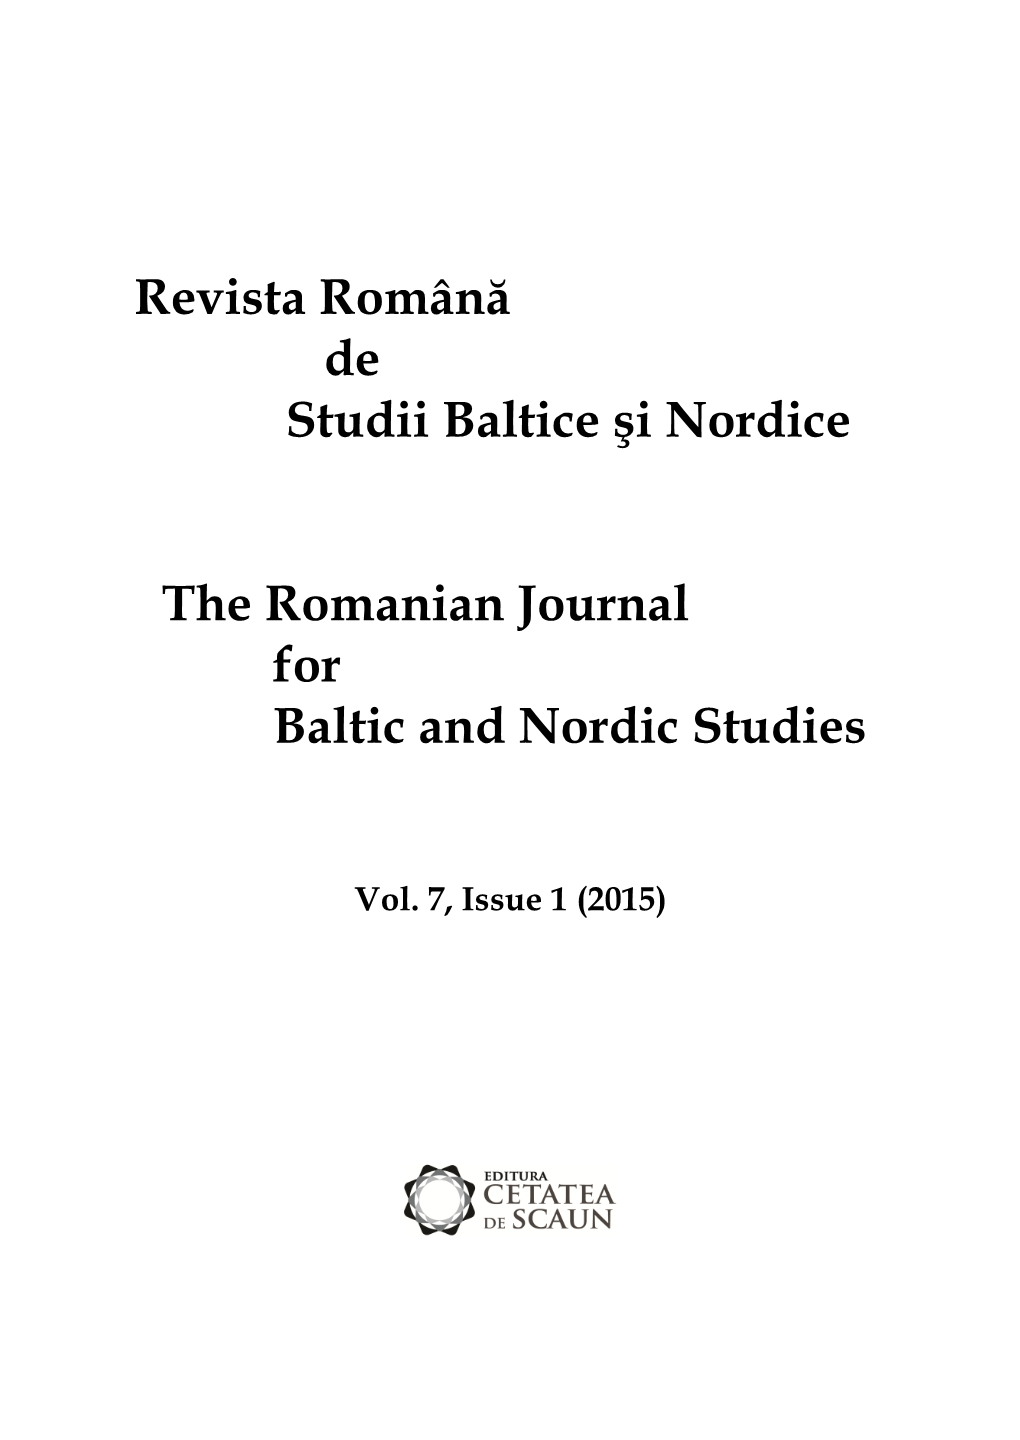 Revista Română De Studii Baltice Şi Nordice the Romanian Journal For